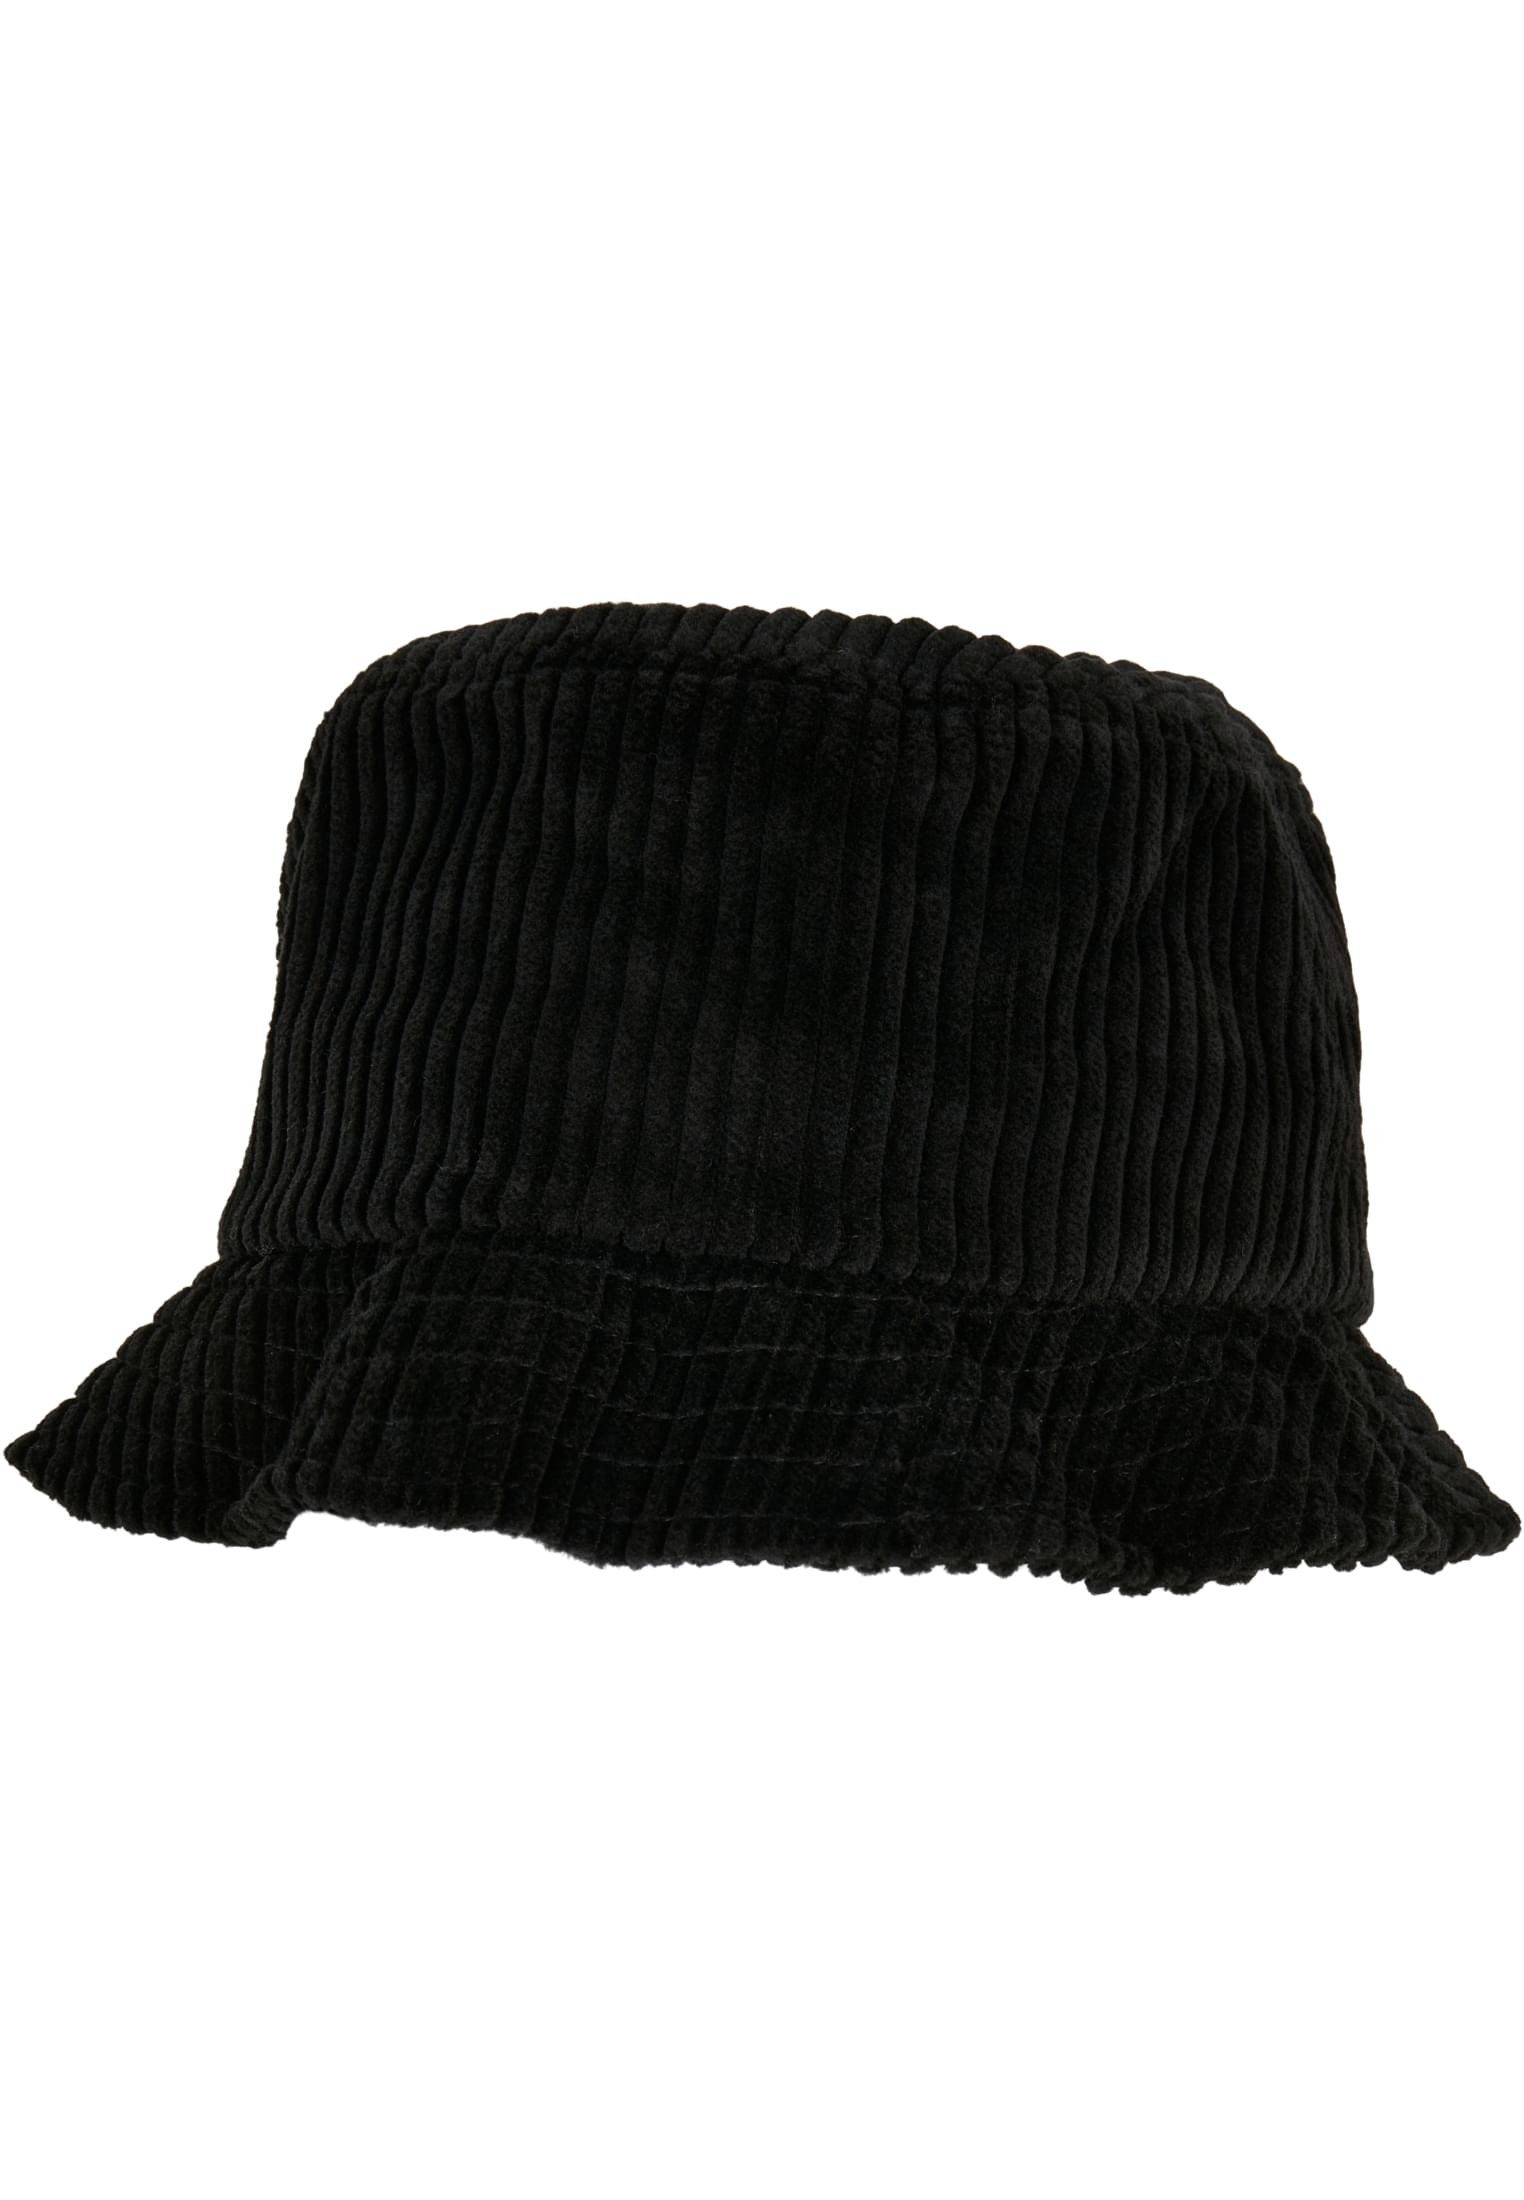 Hat black Corduroy Flex Accessoires Cap Bucket Flexfit Big